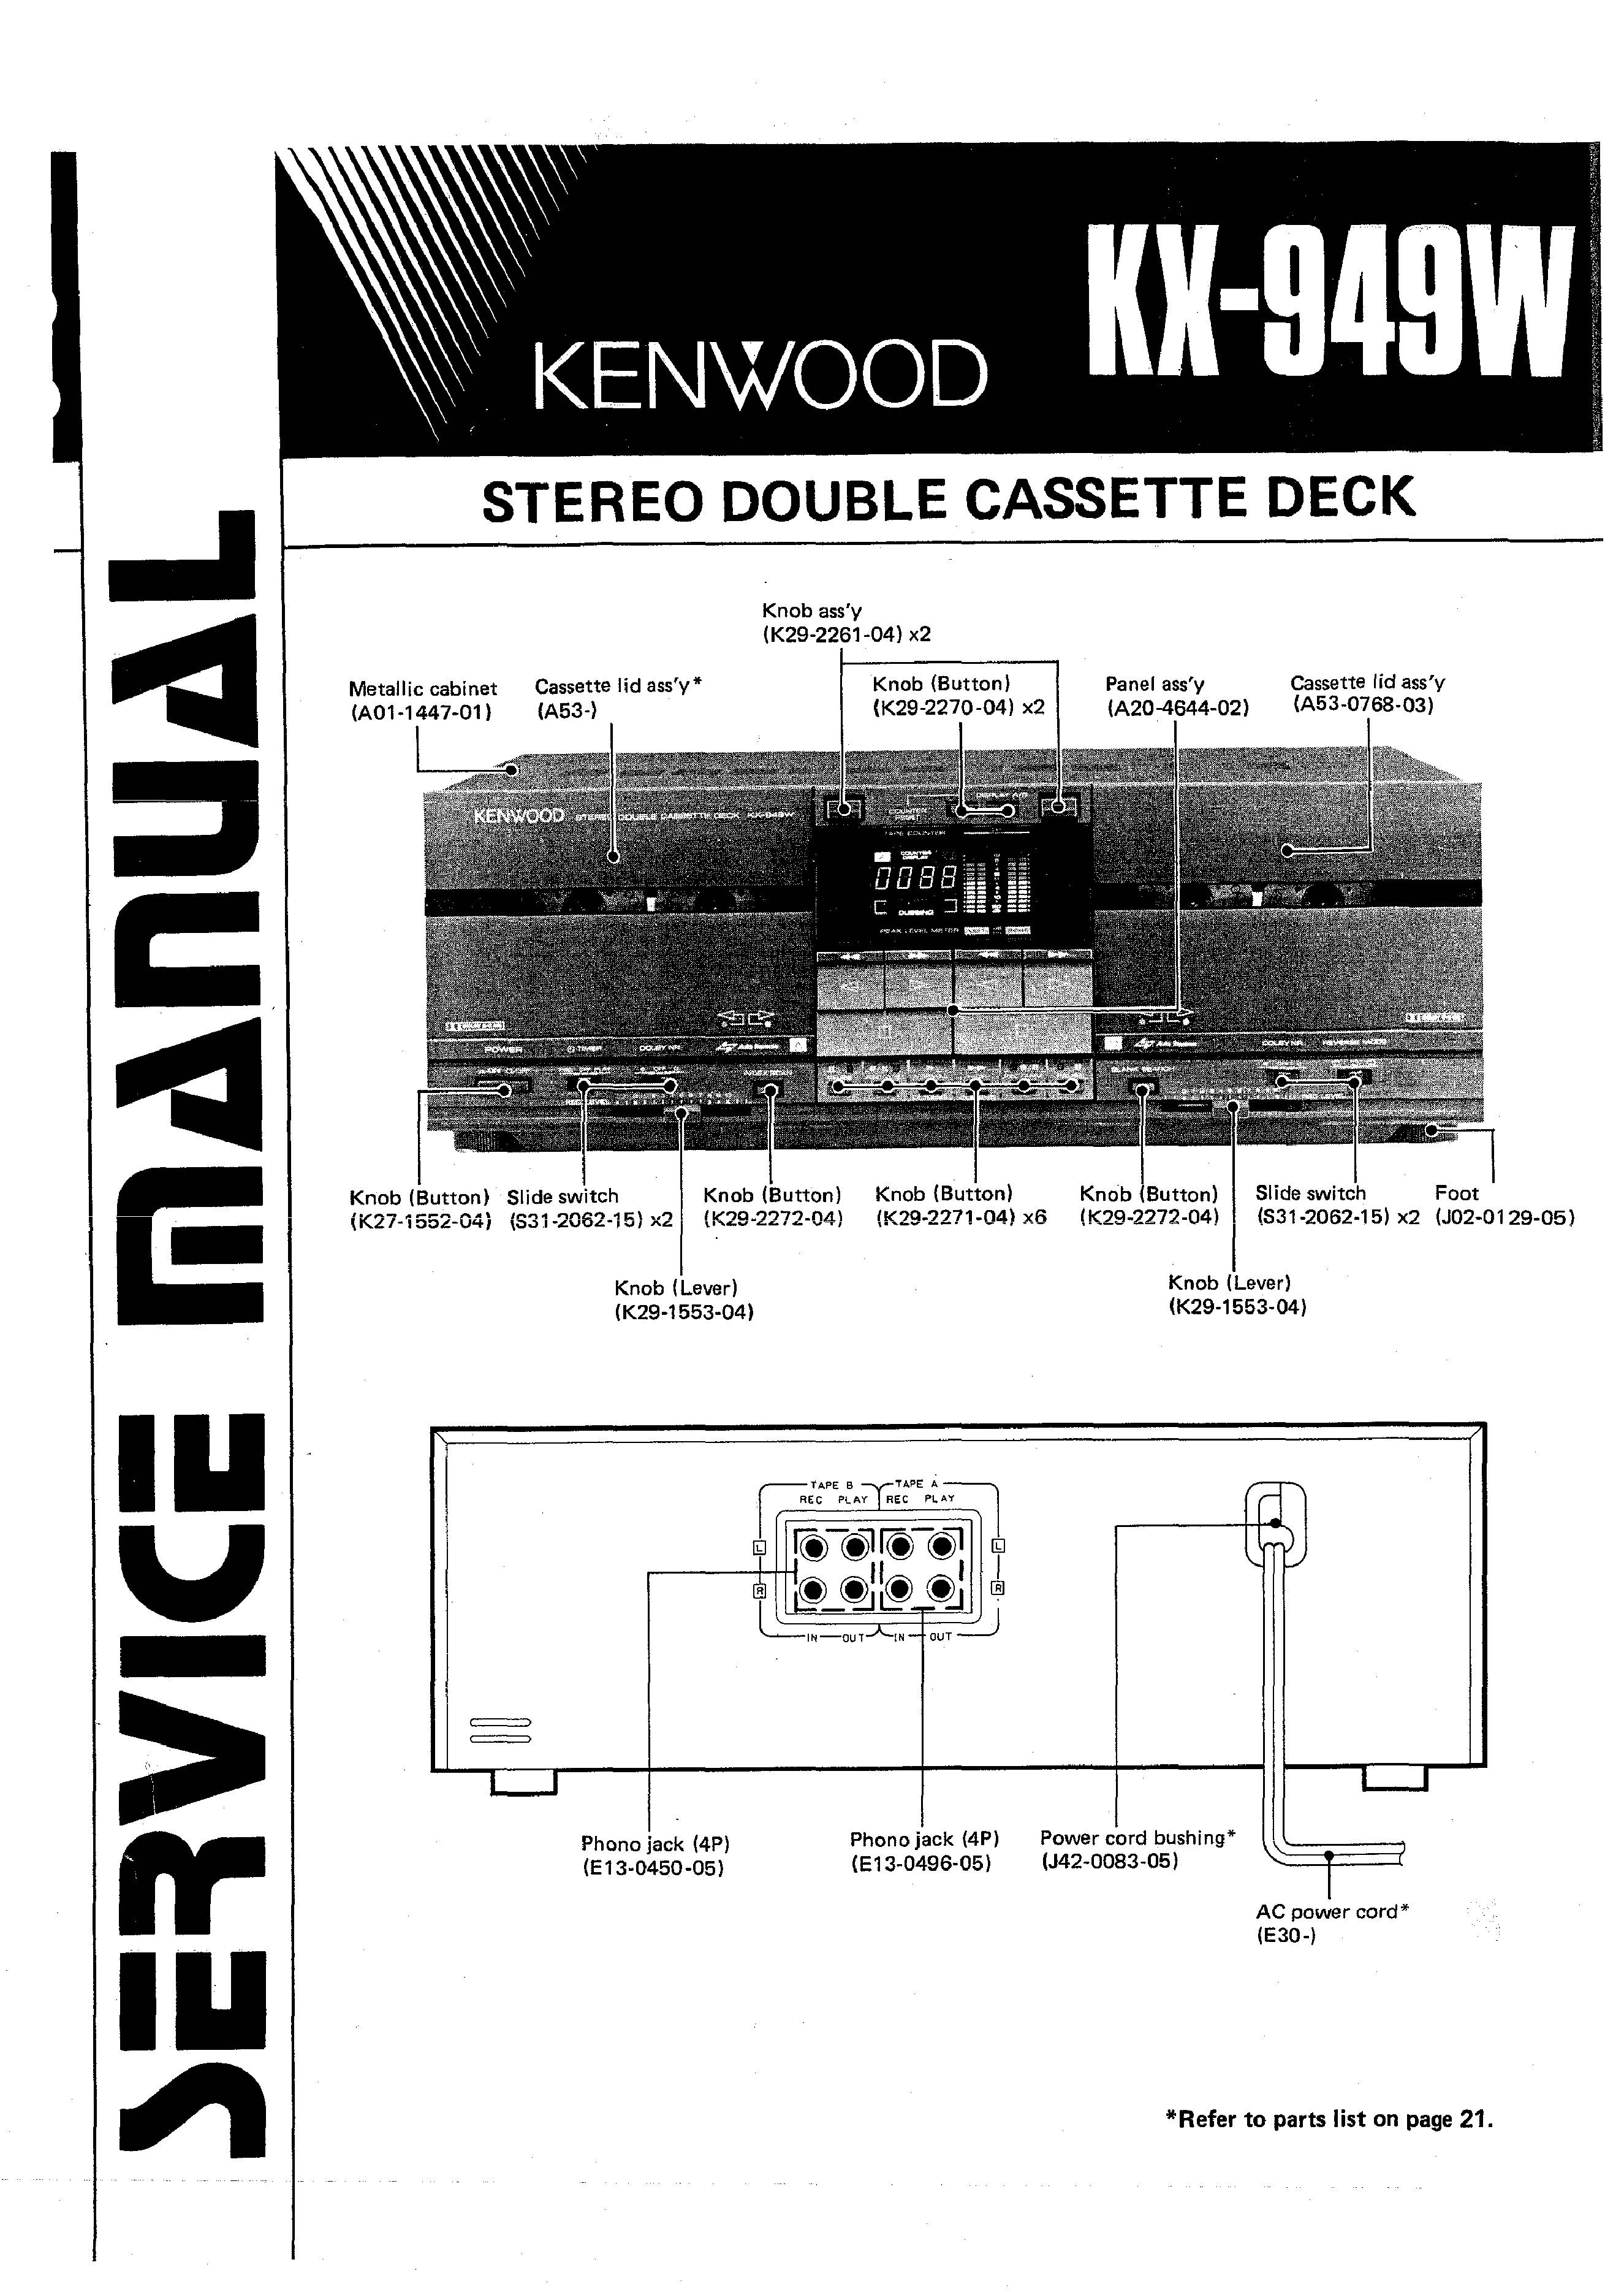 Kenwood KX-949W